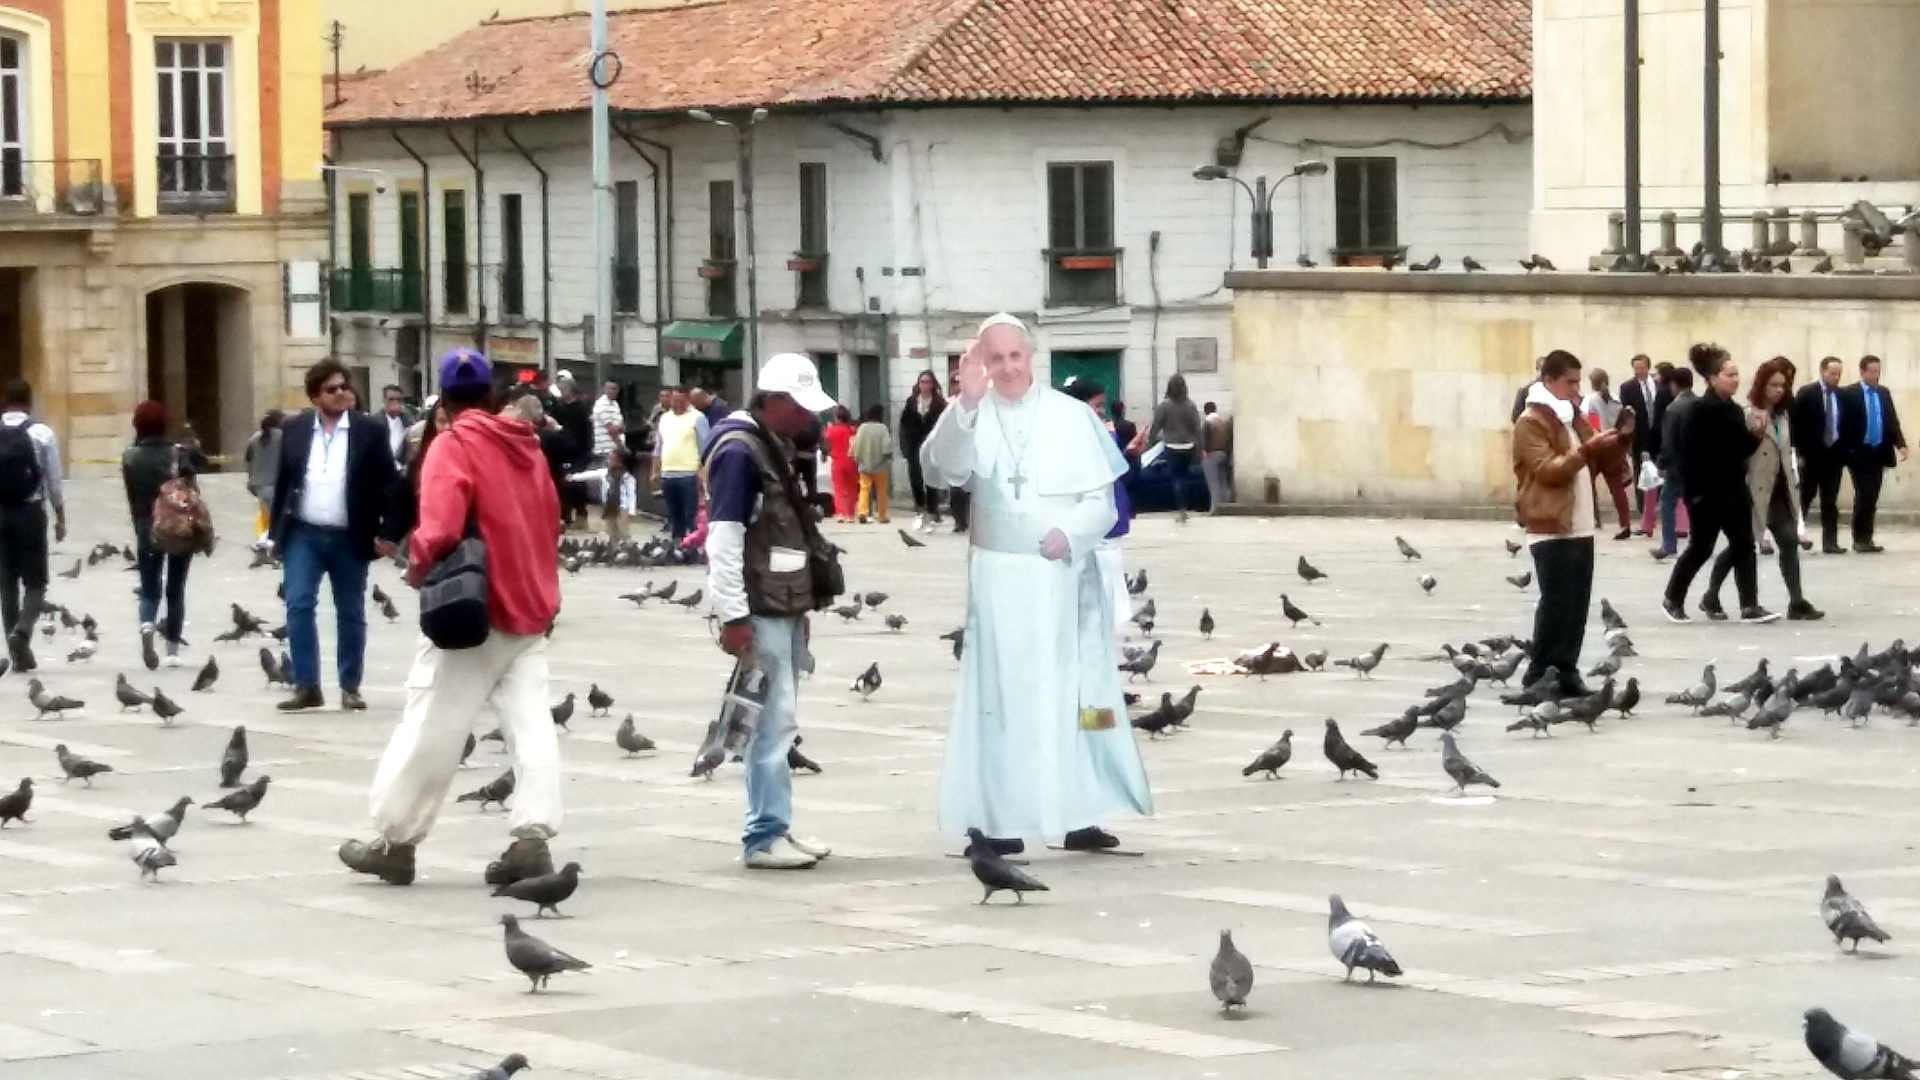 Figur von Papst Franziskus vor der Kathedrale in Bogota